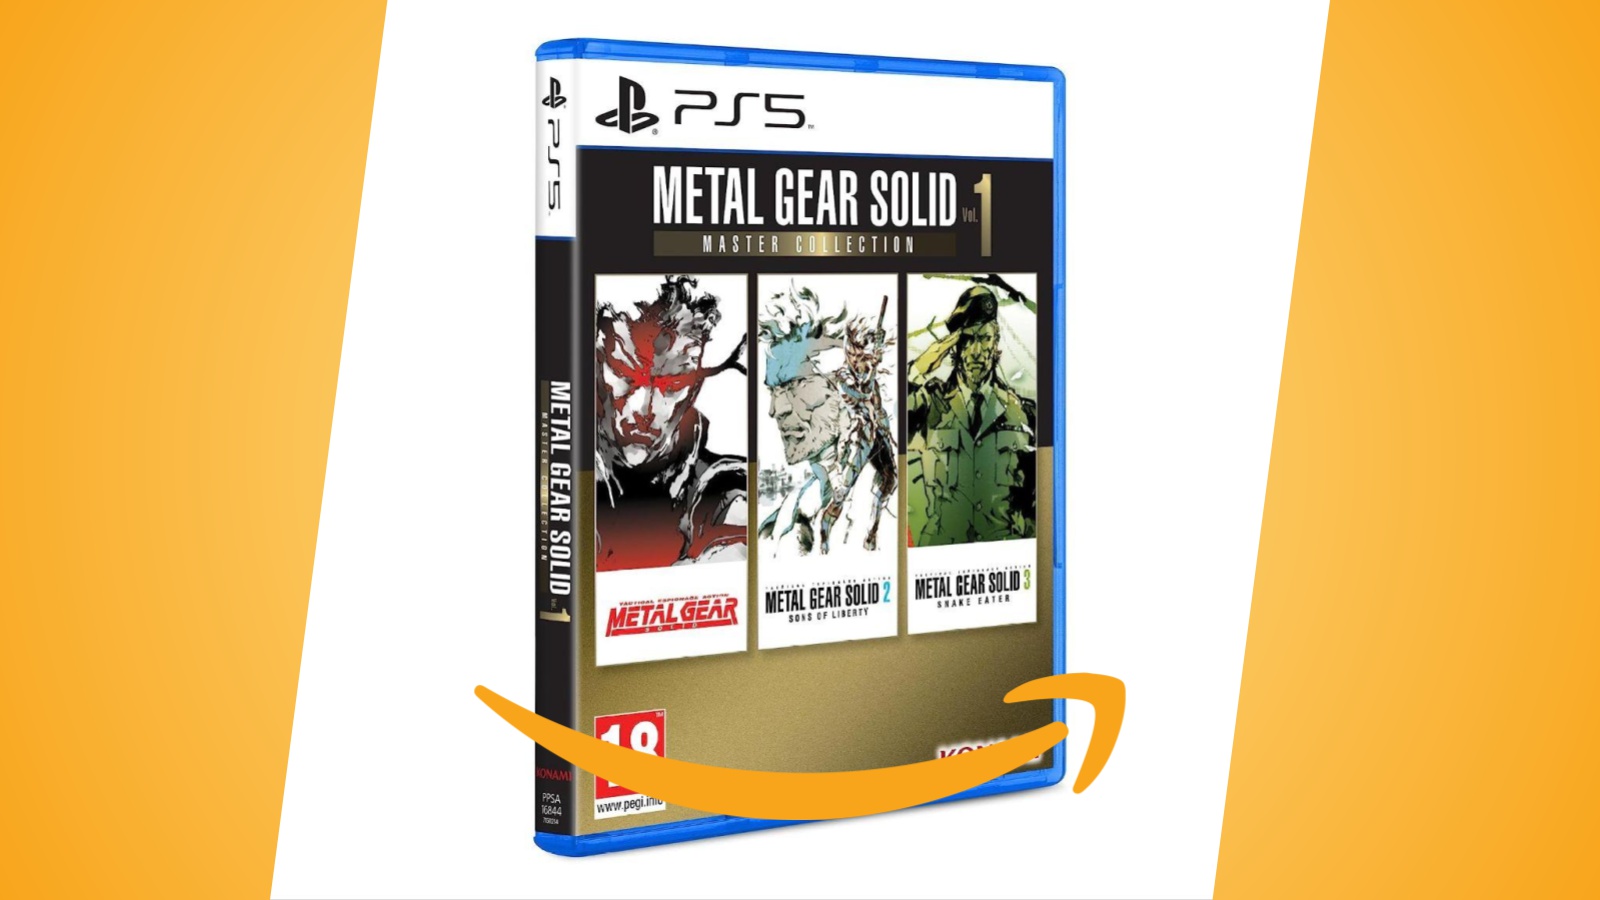 Metal Gear Solid Master Collection Vol. 1: prenotazione Amazon per PS5, Xbox e Switch disponibile